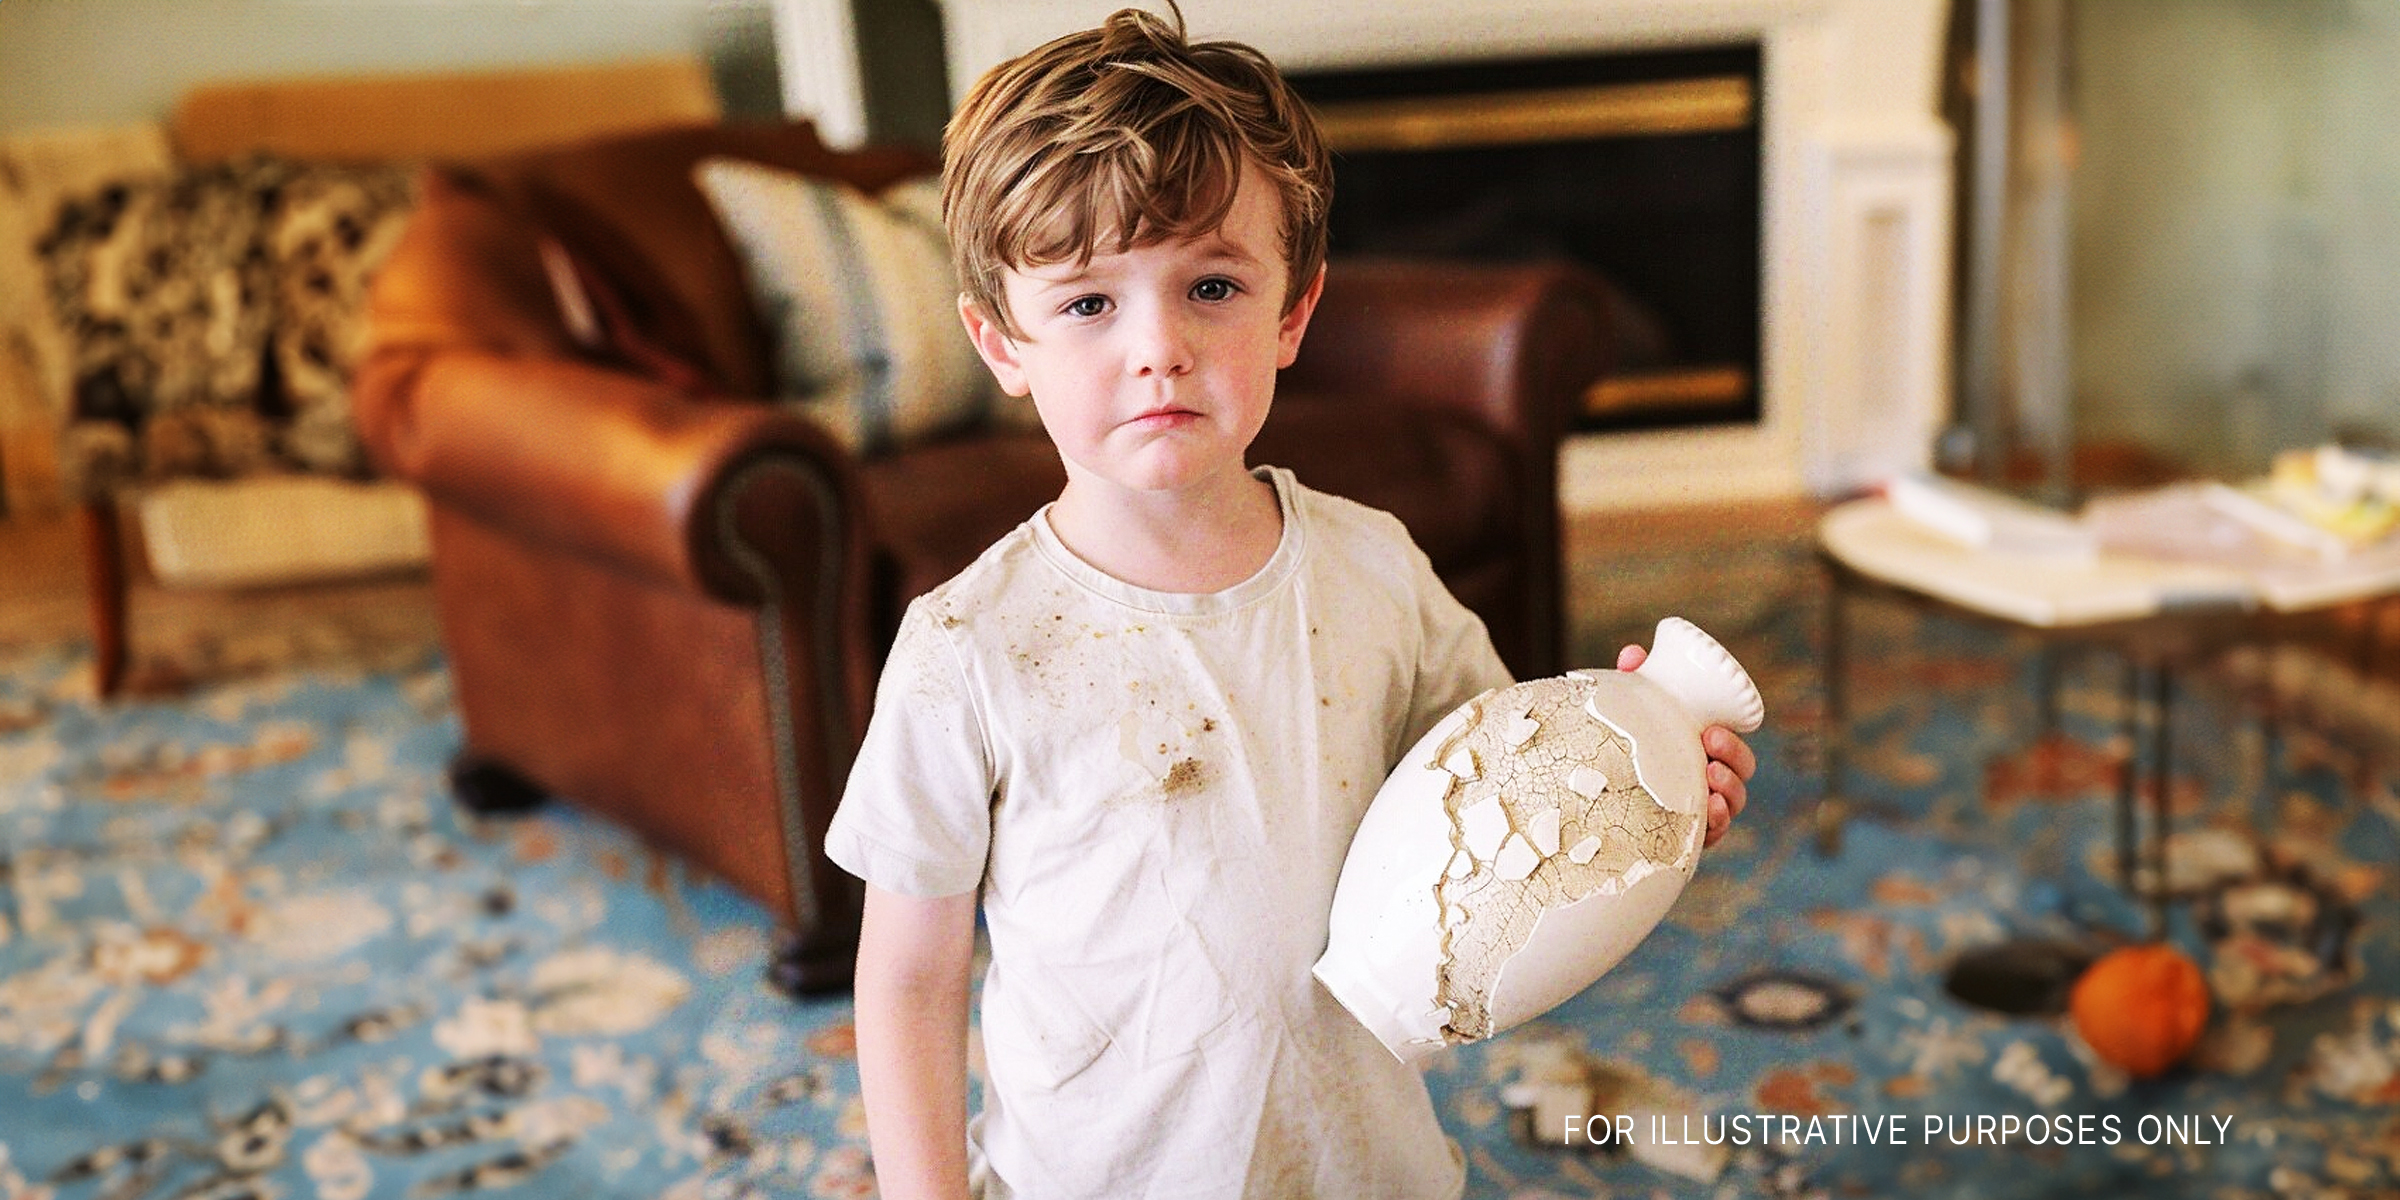 Boy holds a vase | Source: Midjourney